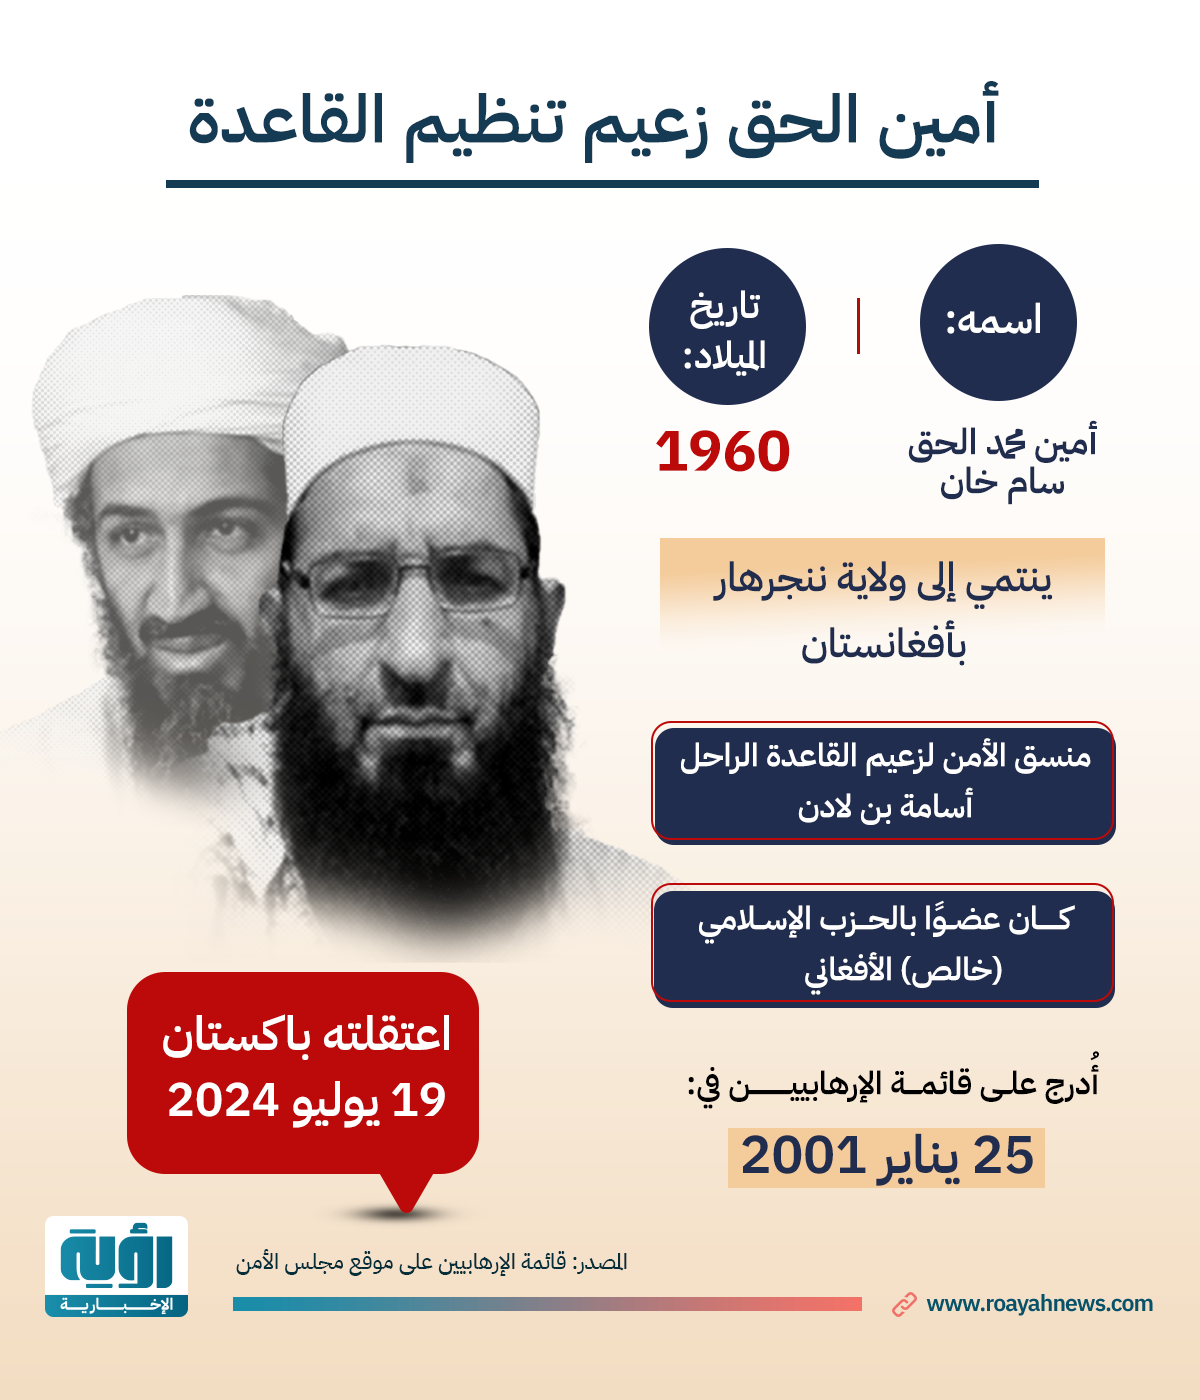 إنفوجراف| أمين الحق زعيم تنظيم القاعدة